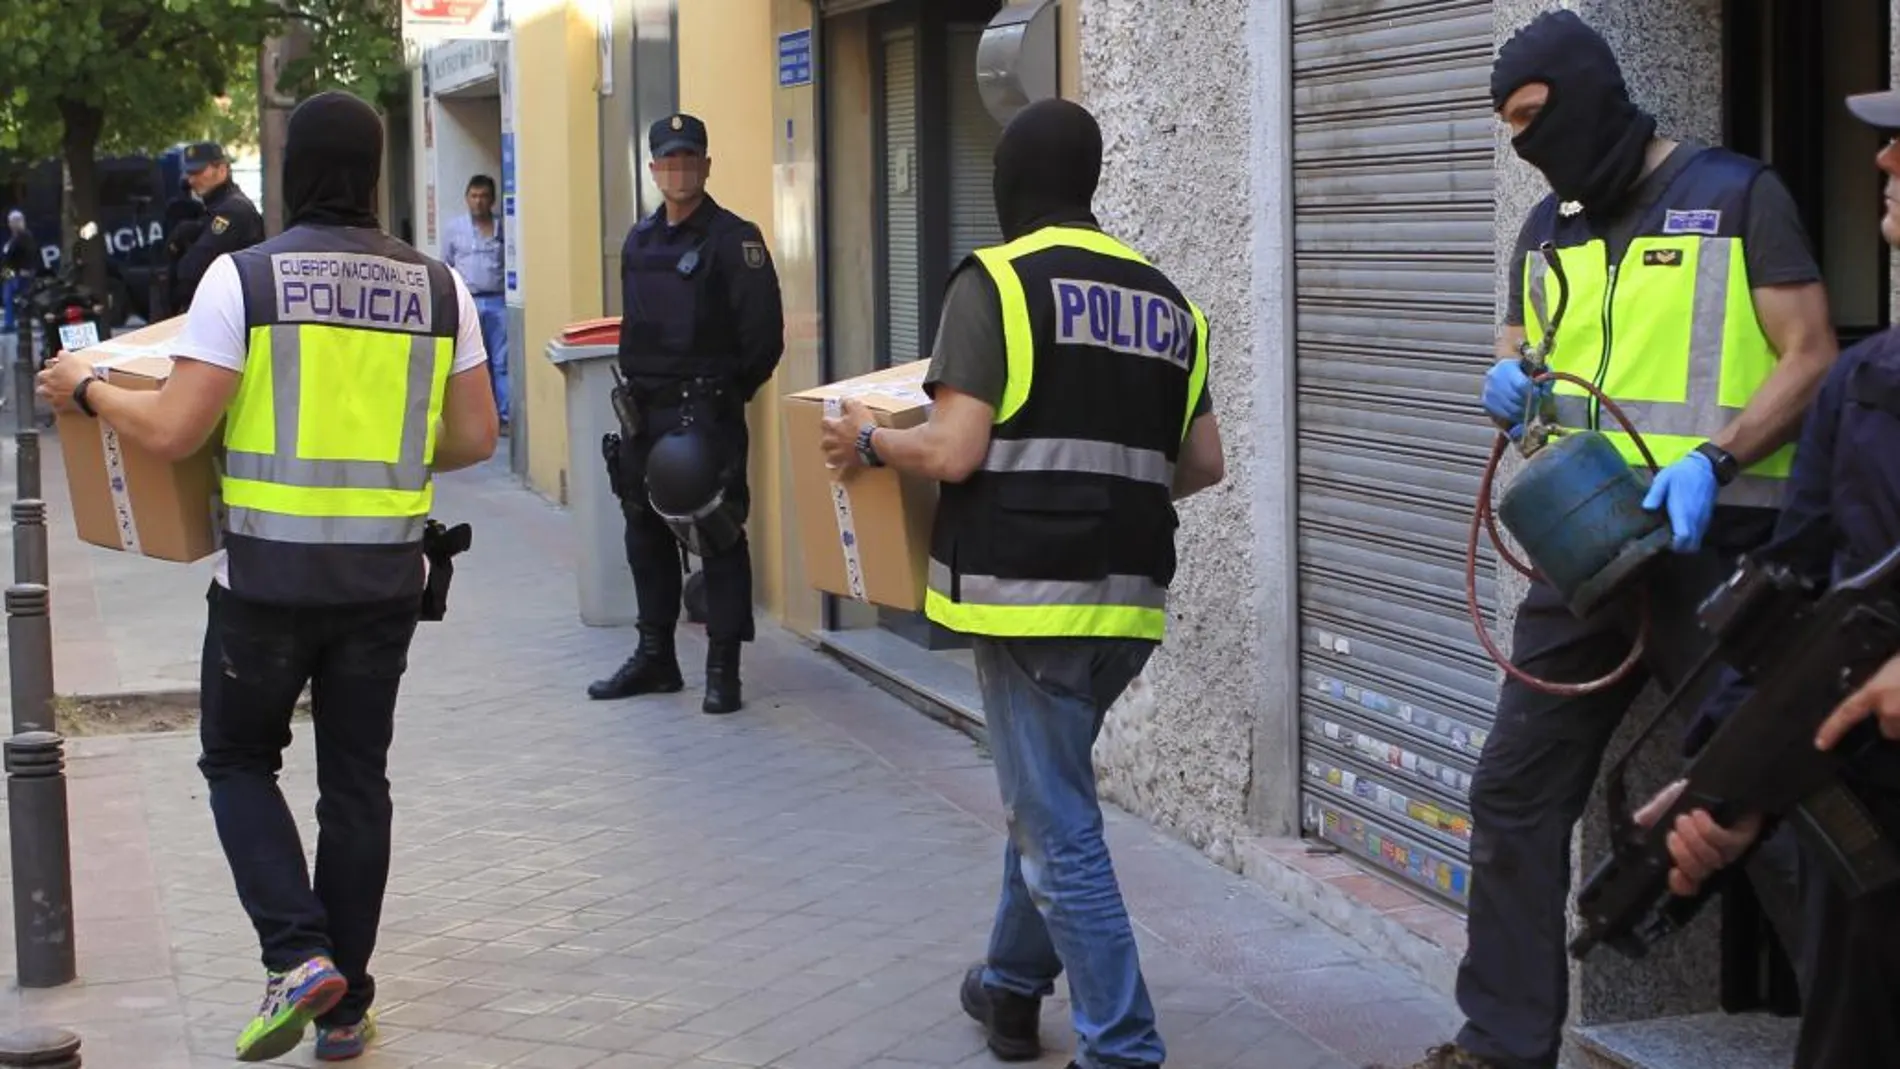 Efectivos de la polícia trasladan material requisado en el domicilio de uno de los detenidos